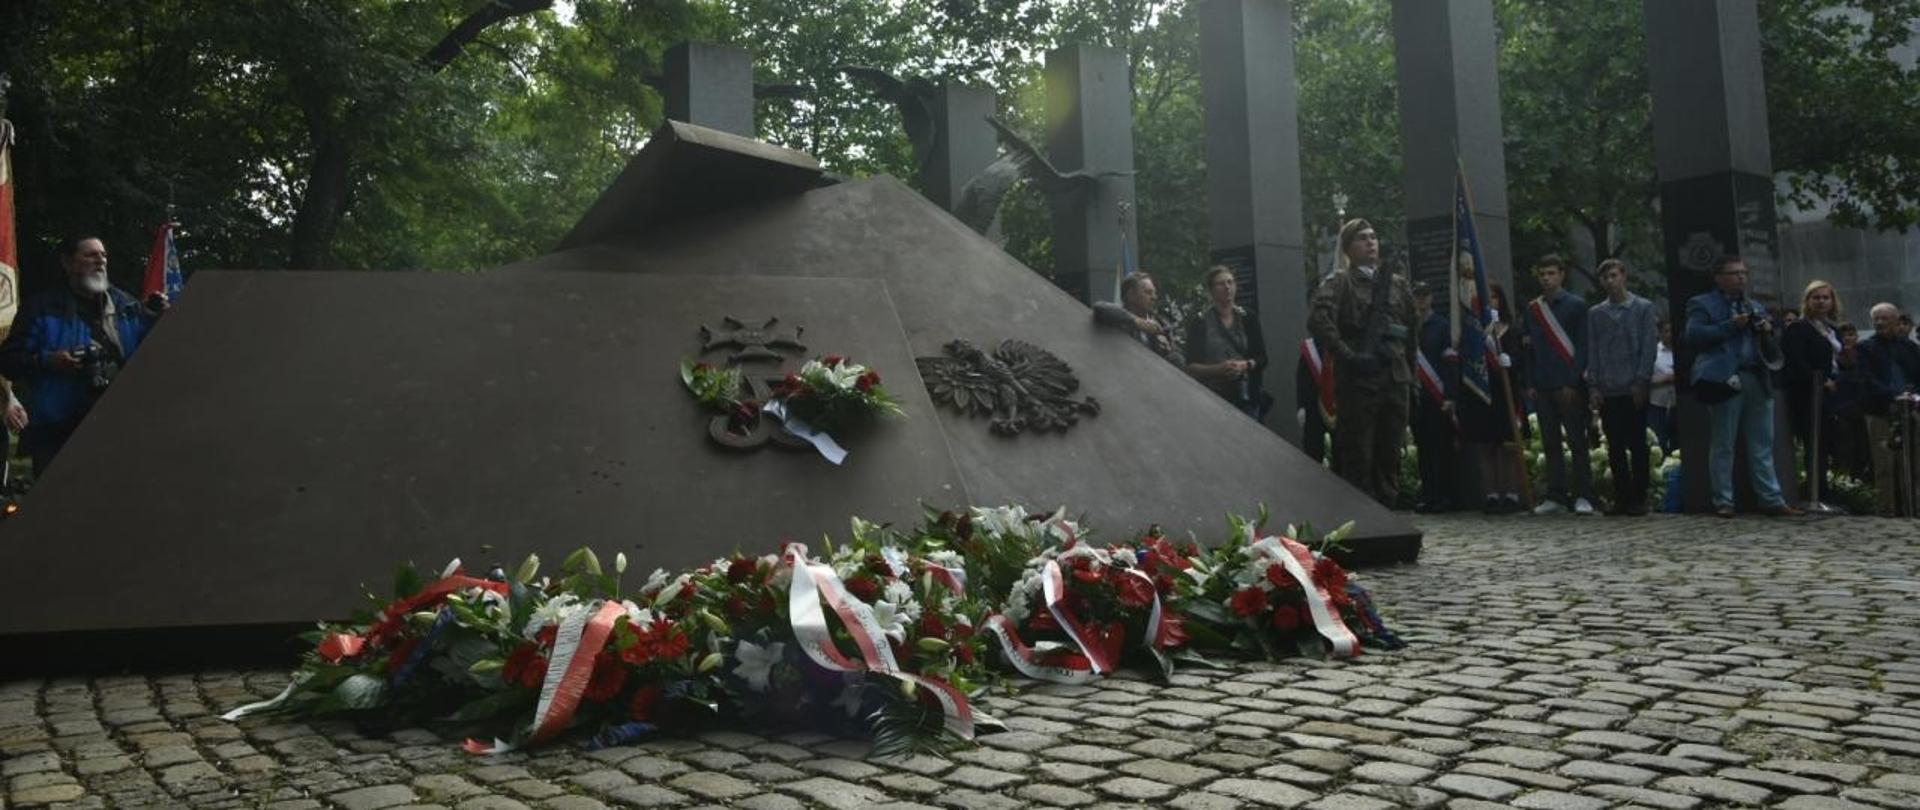 duży pomnik złożony z dwóch płyt żeliwnych, ma jednej z nich znak Polski walczącej a na drugim orła polskiego. przed pomnikiem leżą wiązanki kwiatów z biało czerwonymi szarfami, obok pomnika stoją poczty sztandarowe, 